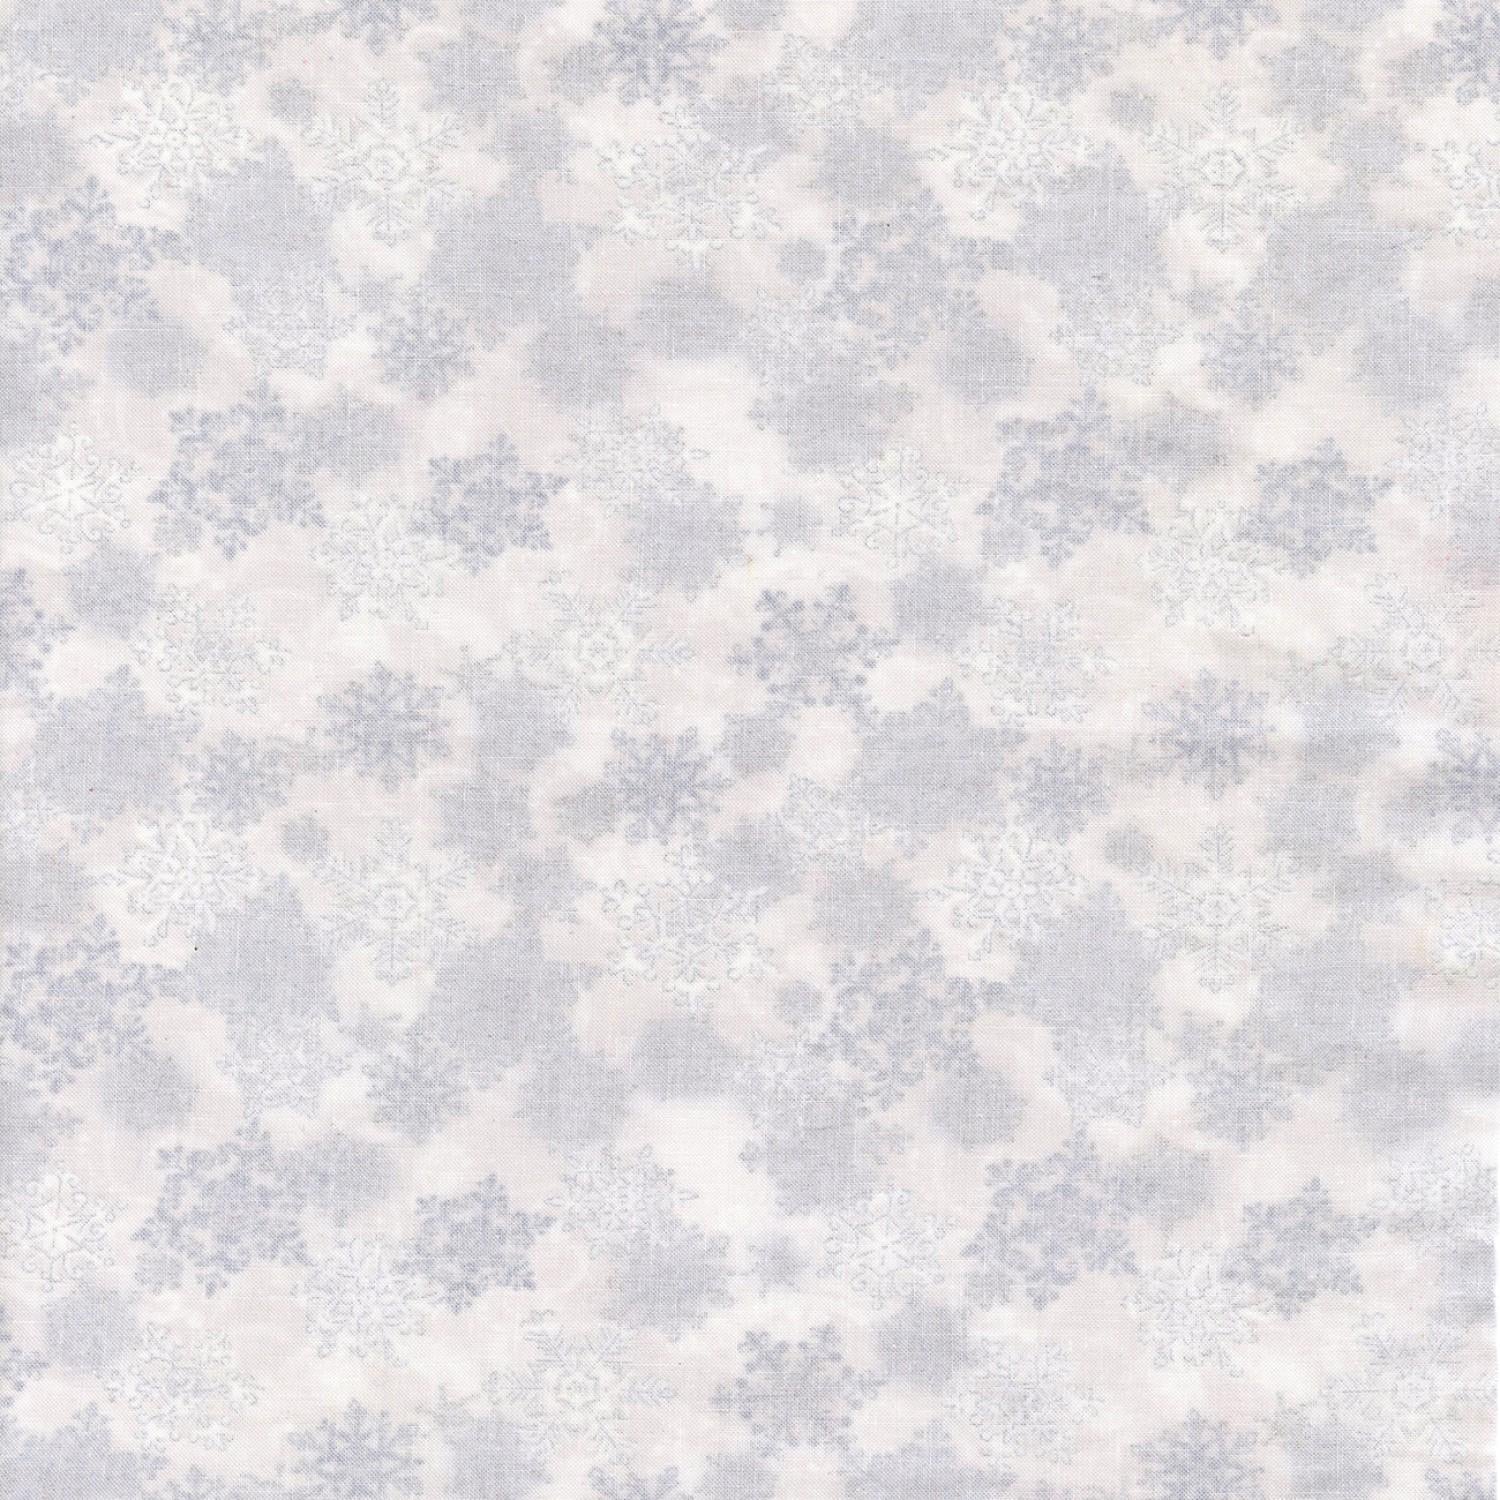 Metallic Snowflakes - CM1390-White